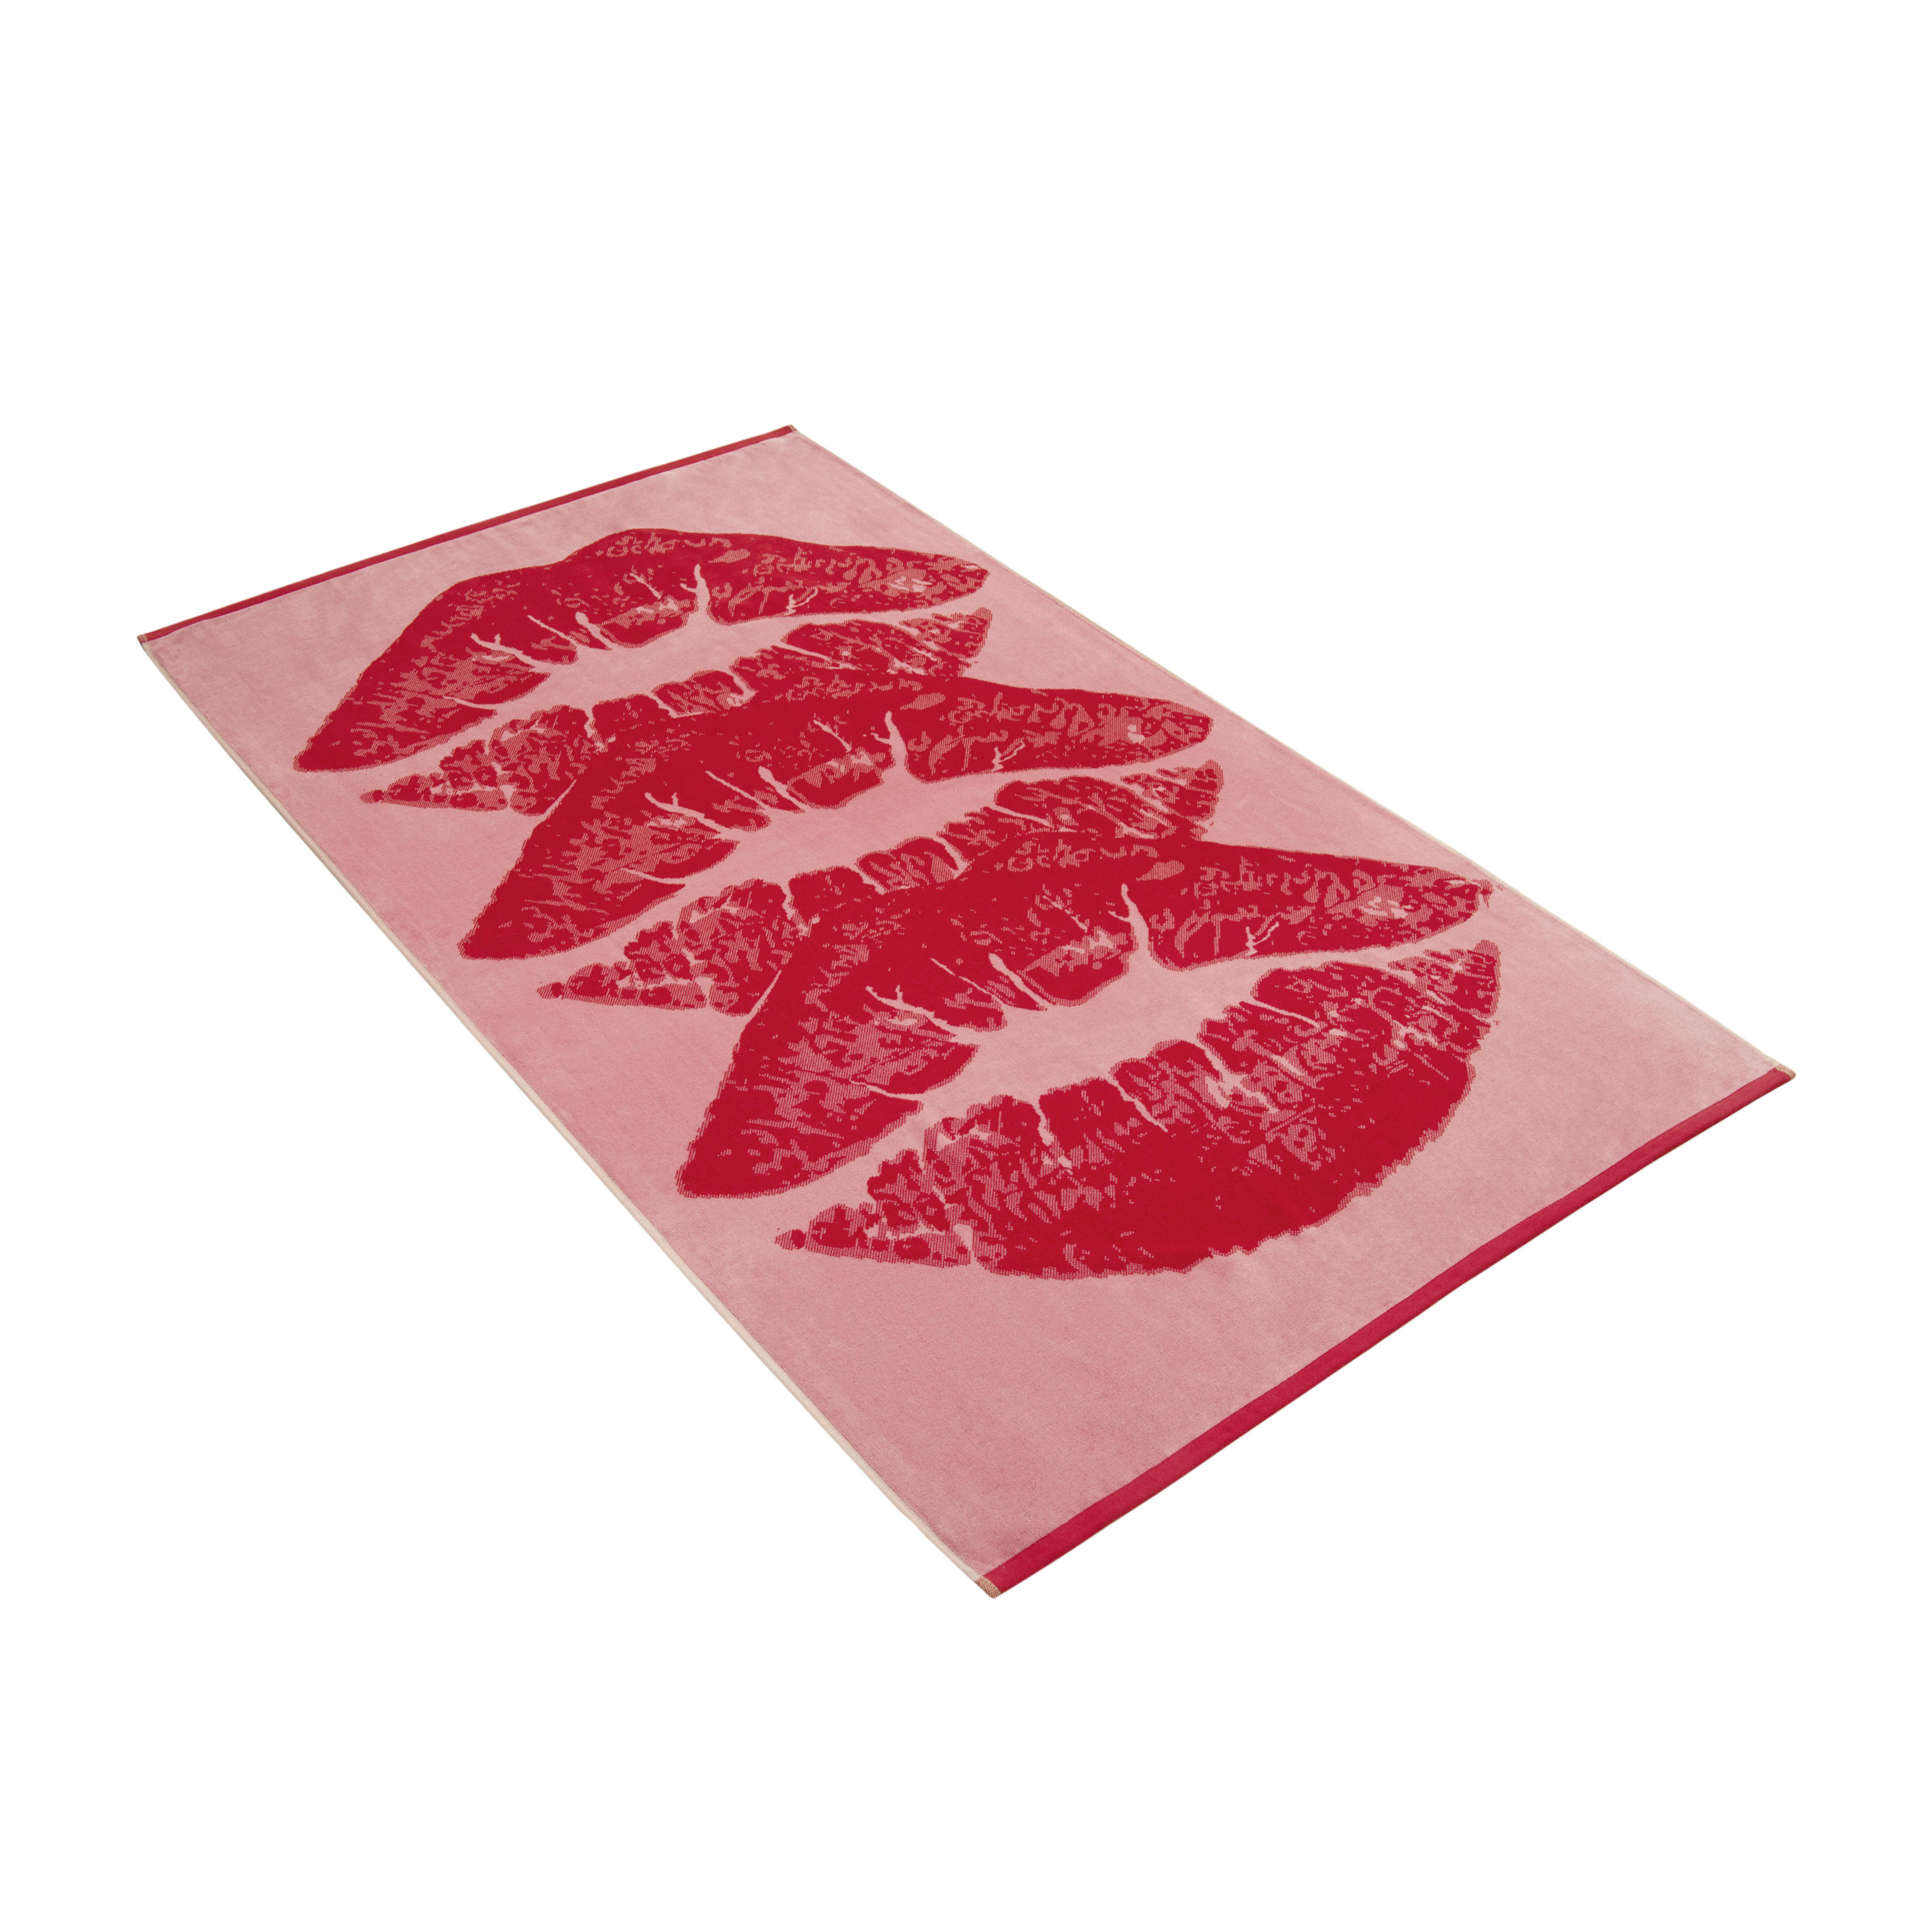 STRANDTUCH XOXO 100/180 cm  - Pink, KONVENTIONELL, Textil (100/180cm) - Vossen